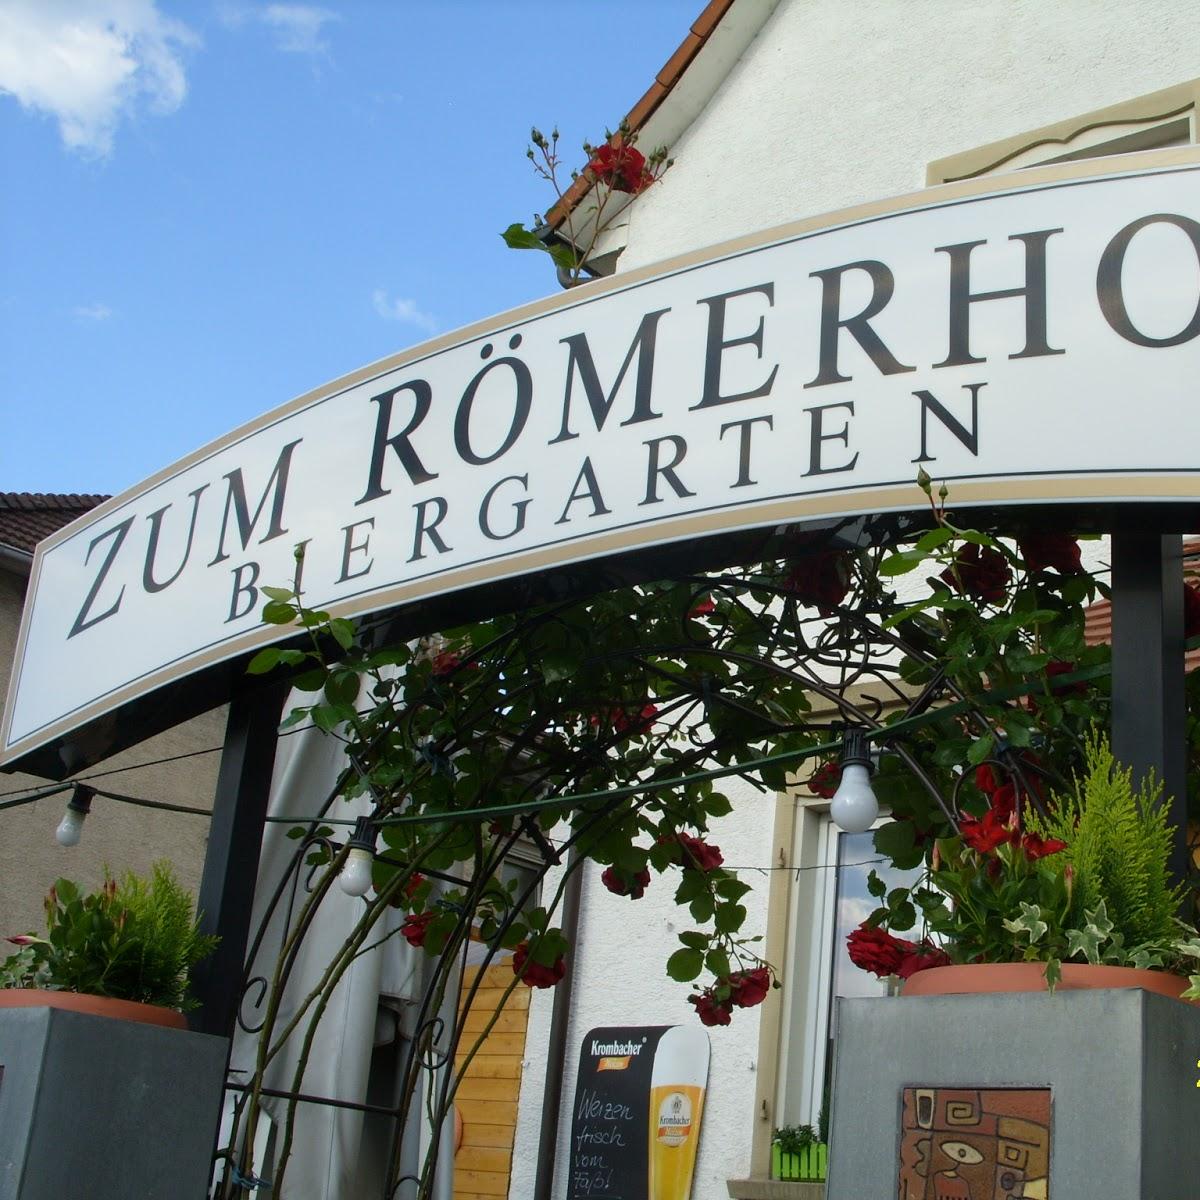 Restaurant "Zum Römerhof" in Groß-Gerau